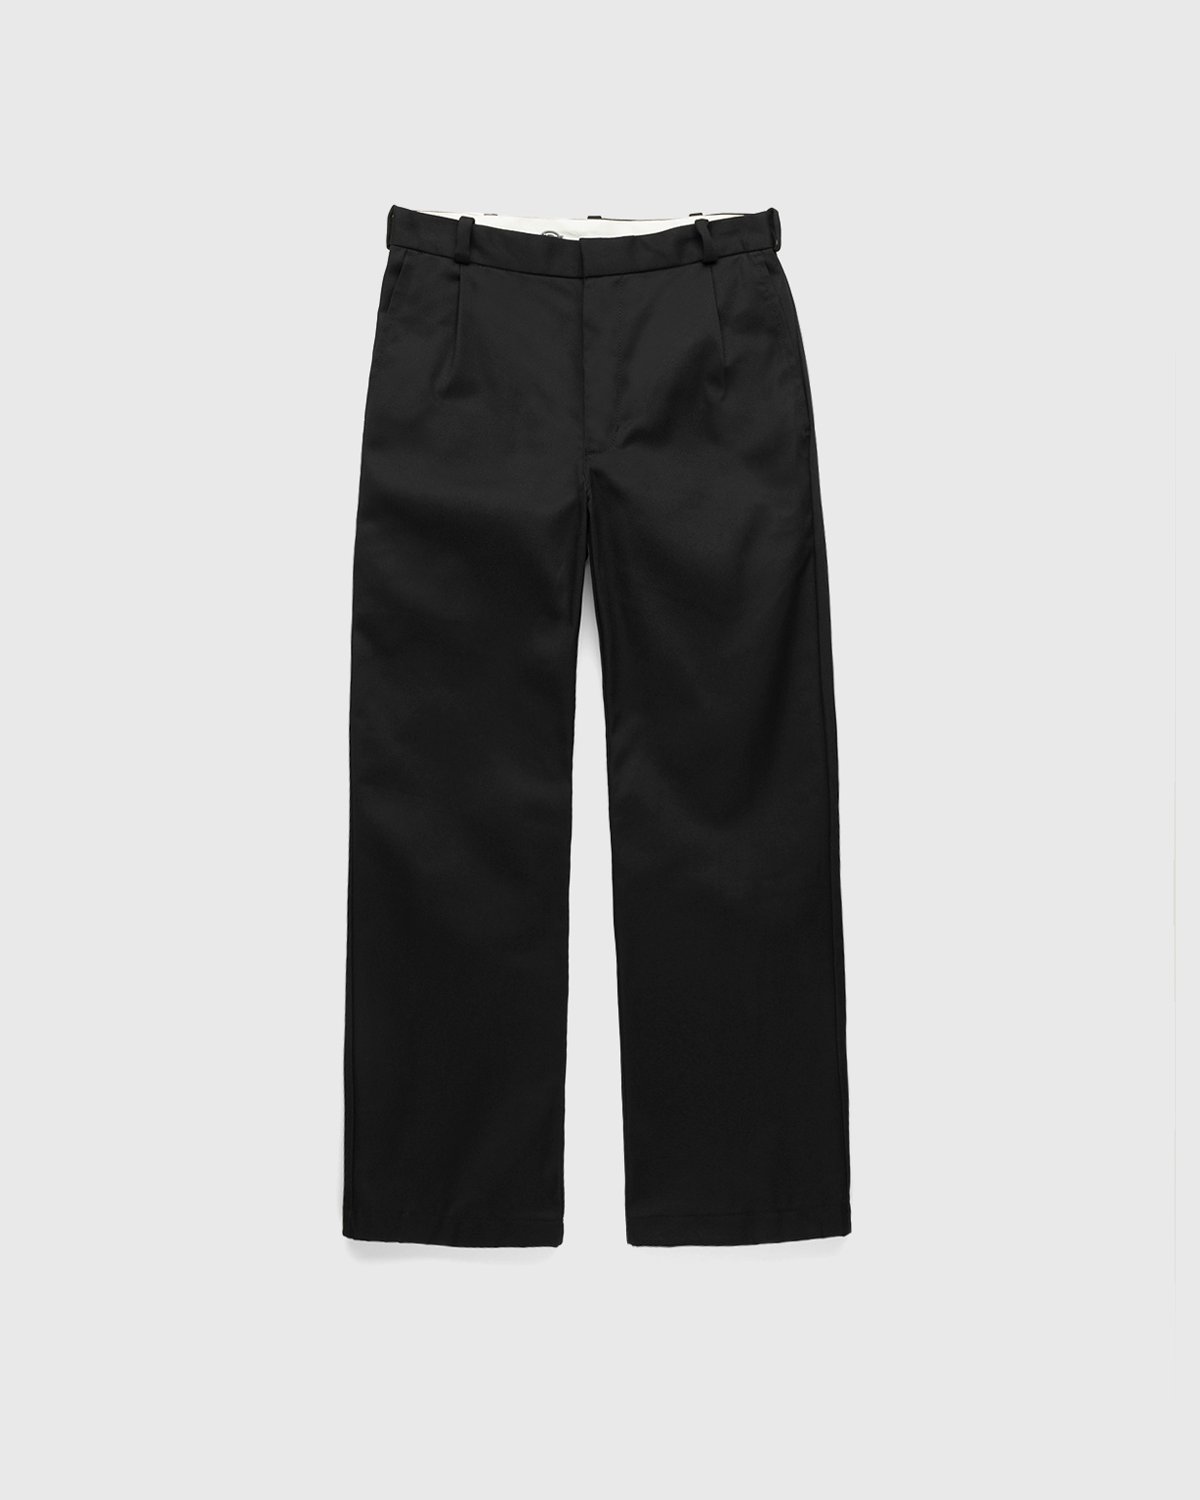 Highsnobiety x Dickies – Pleated Work Pants Black